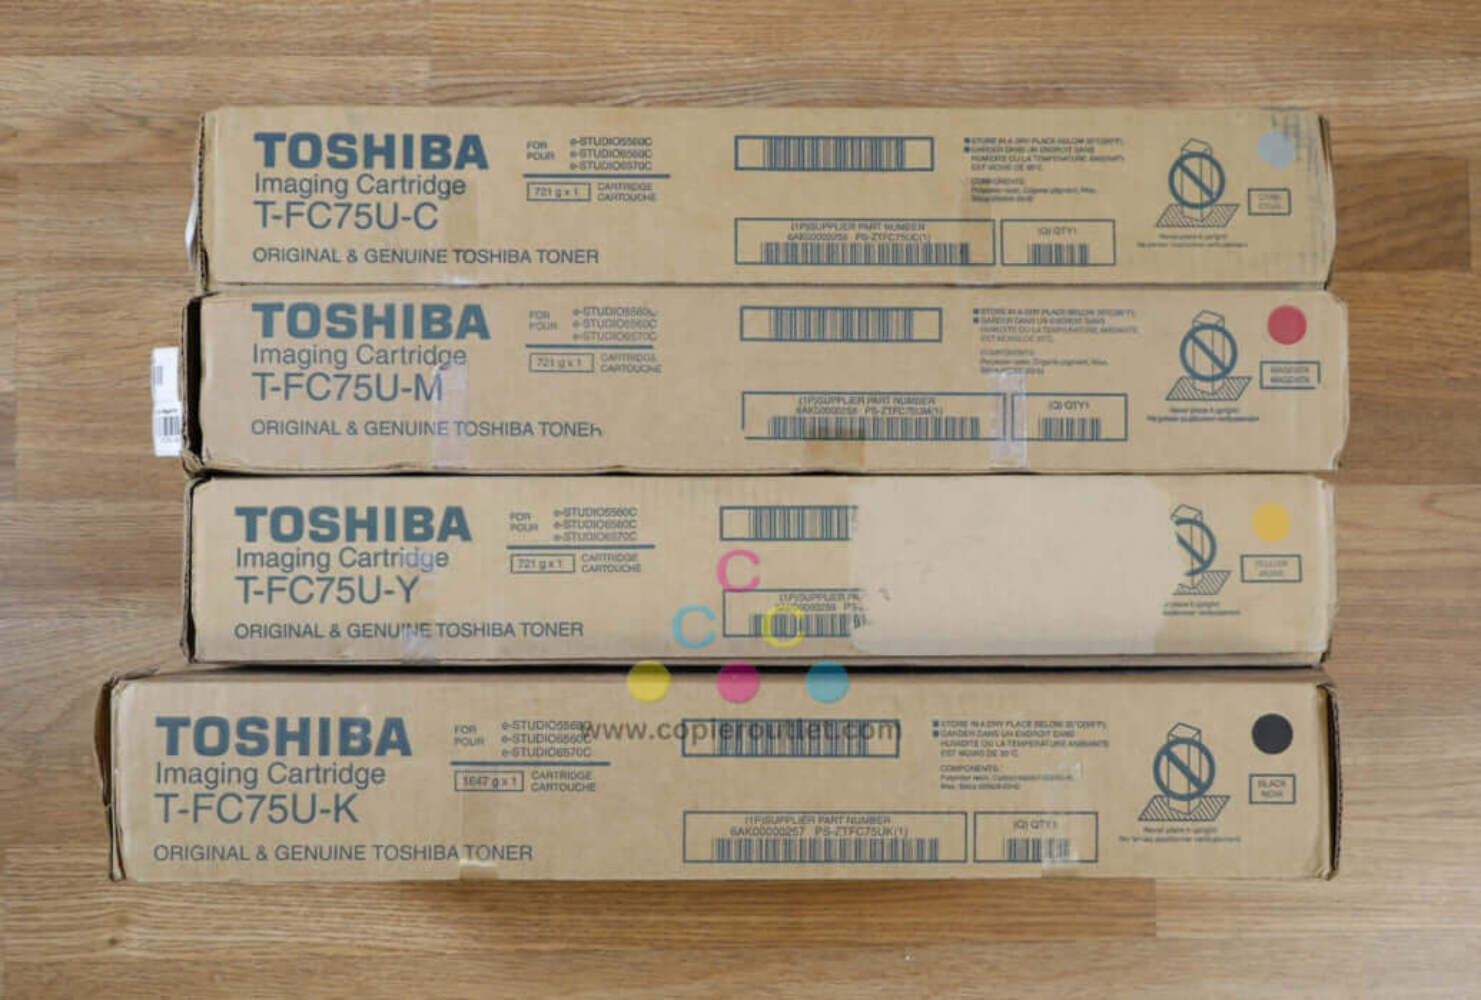 4 Cosmetic OEM Toshiba e-STUDIO5560C,6560C,6570C T-FC75U CMYK Imaging Cartridges